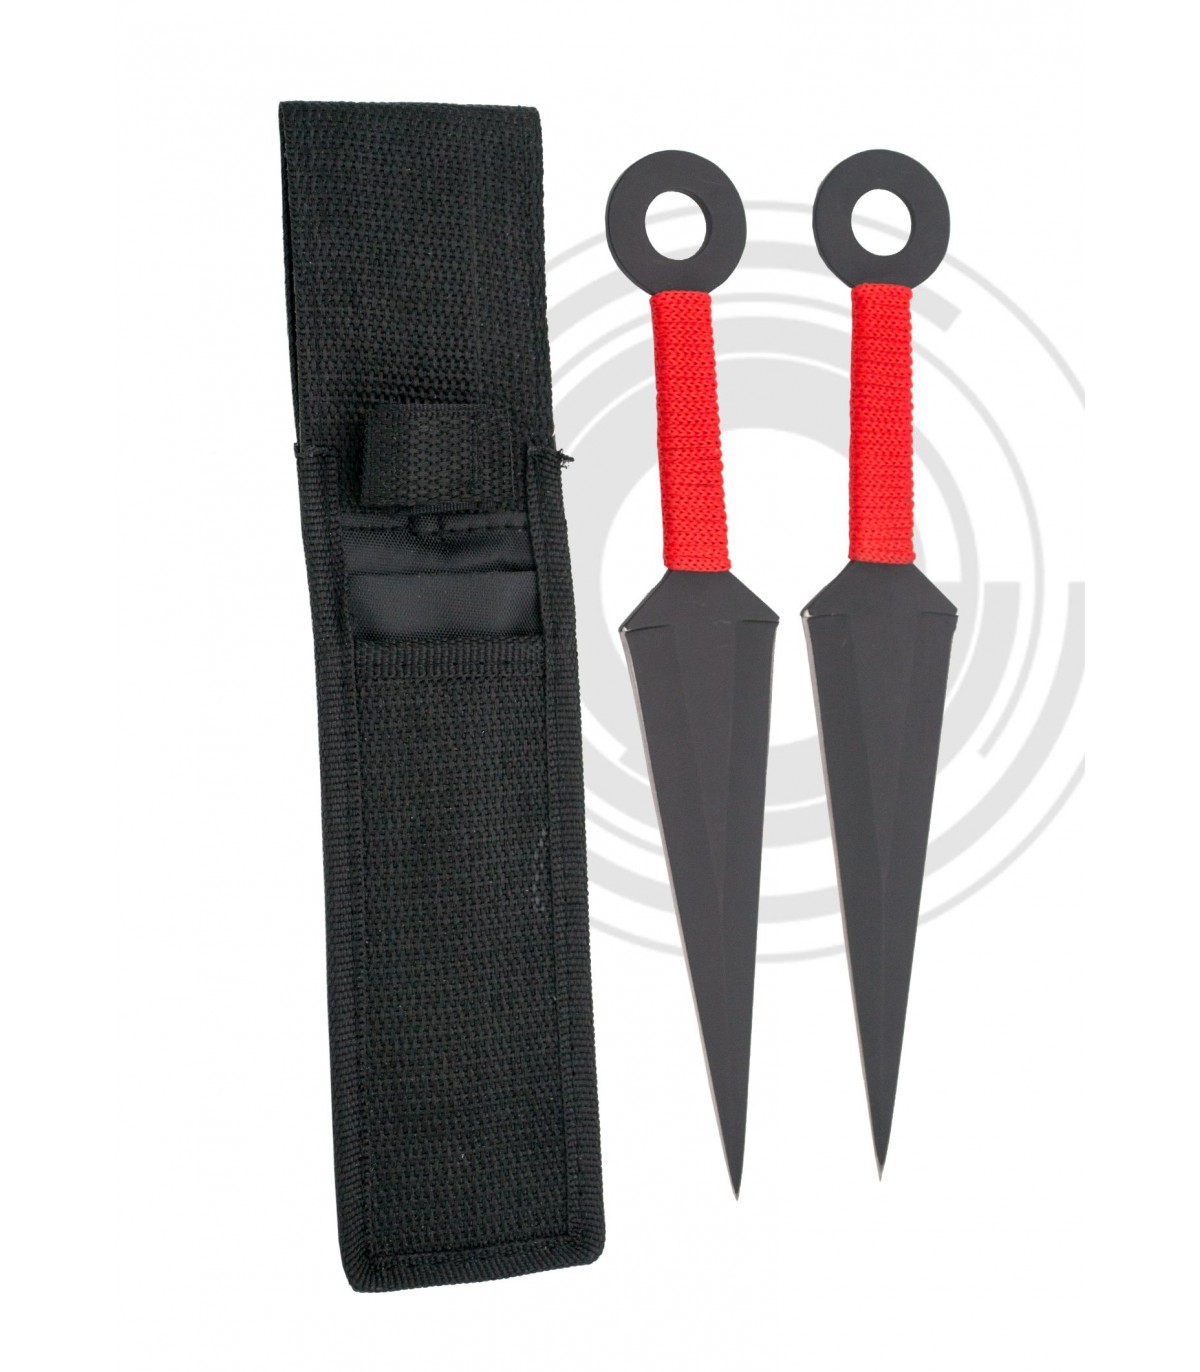 https://cuernavilla.com/13806-superlarge_default/cuchillos-lanzadores-ninja.jpg